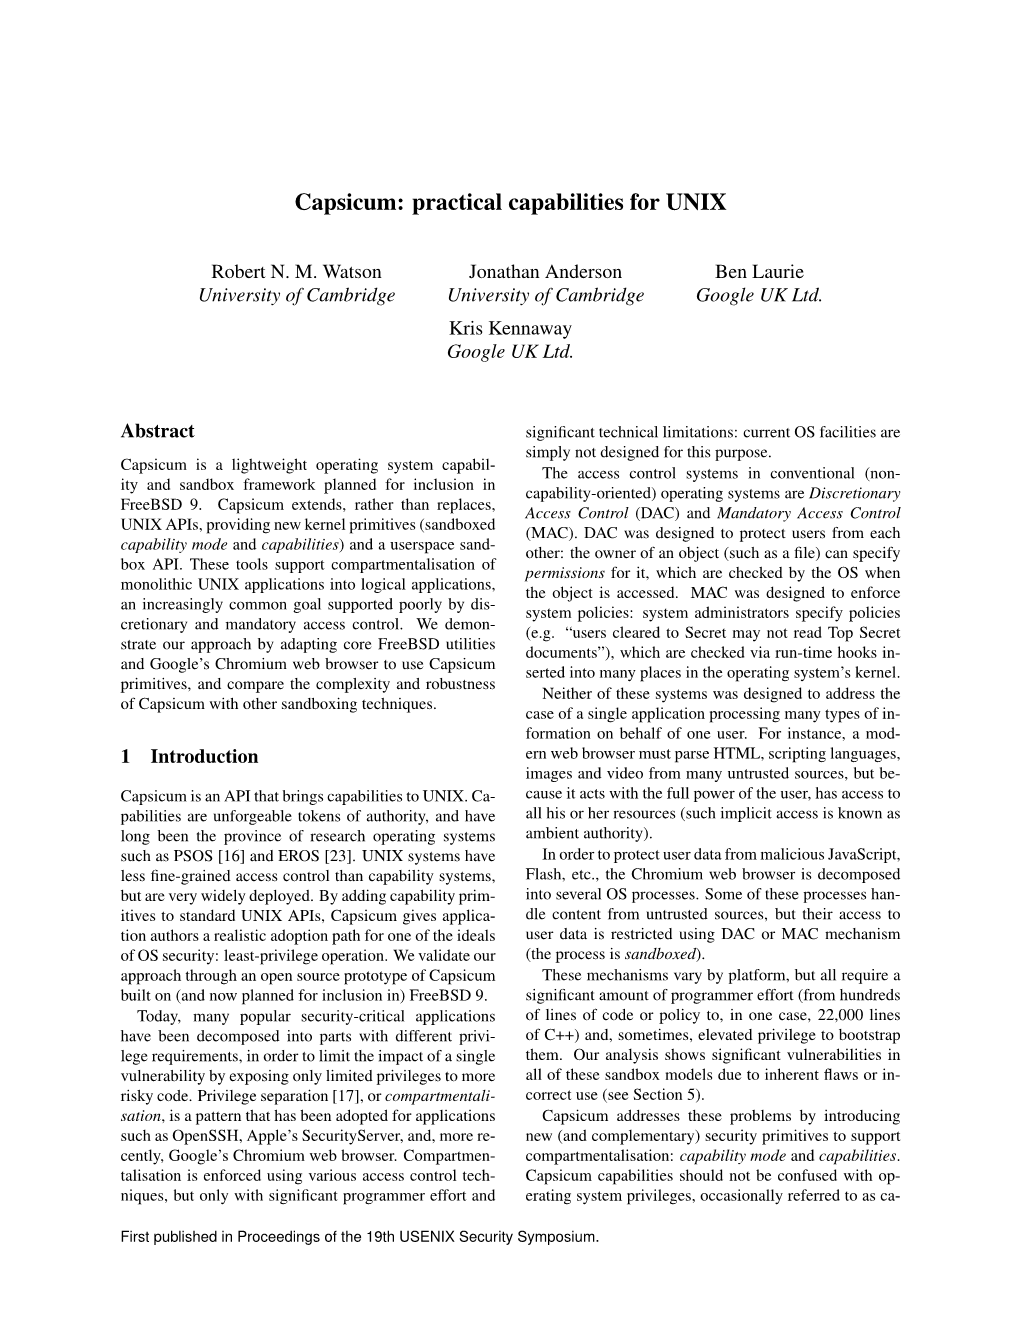 Capsicum: Practical Capabilities for UNIX